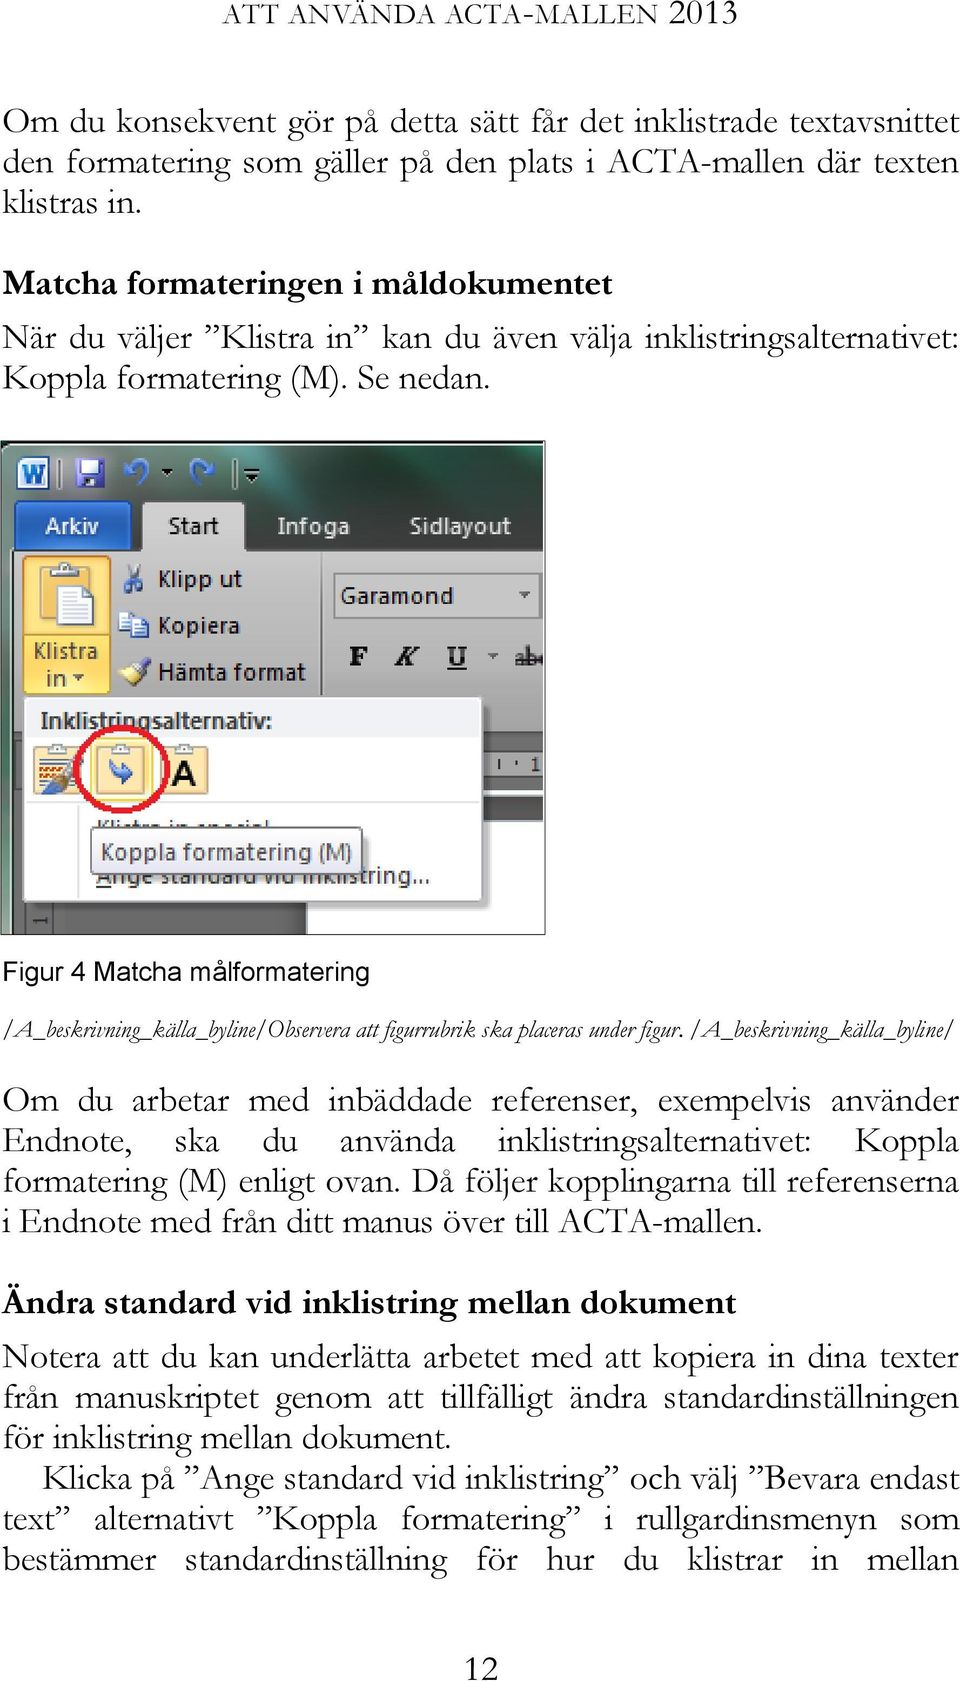 Figur 4 Matcha målformatering /A_beskrivning_källa_byline/Observera att figurrubrik ska placeras under figur.